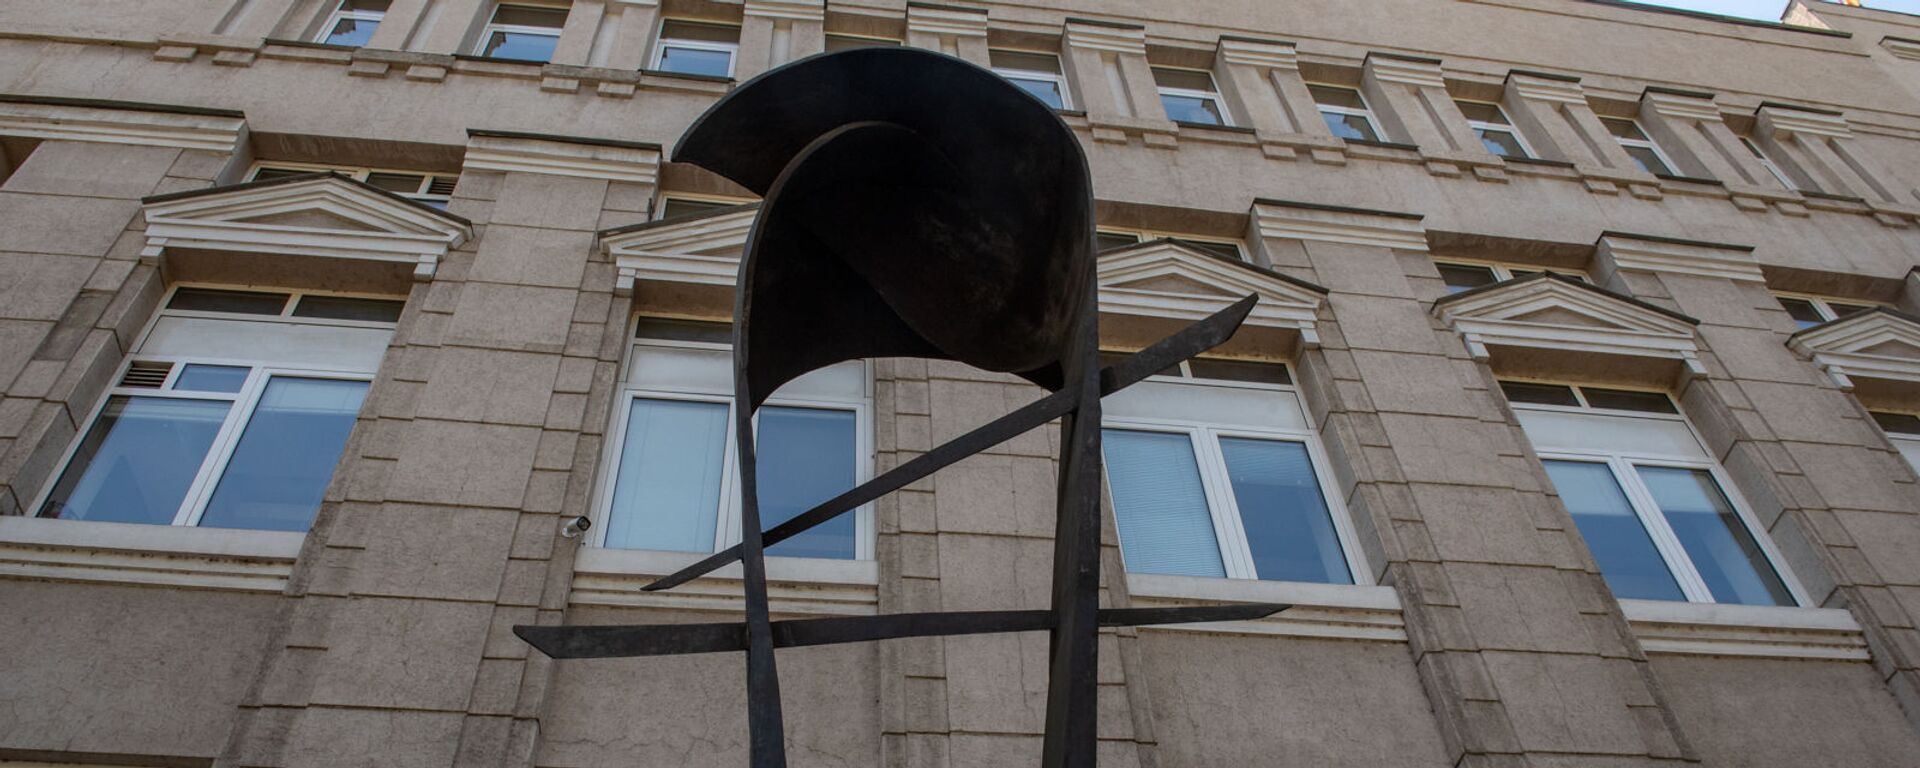 Скульптура армянскому драму перед зданием Центрального Банка Армении - Sputnik Армения, 1920, 15.12.2020